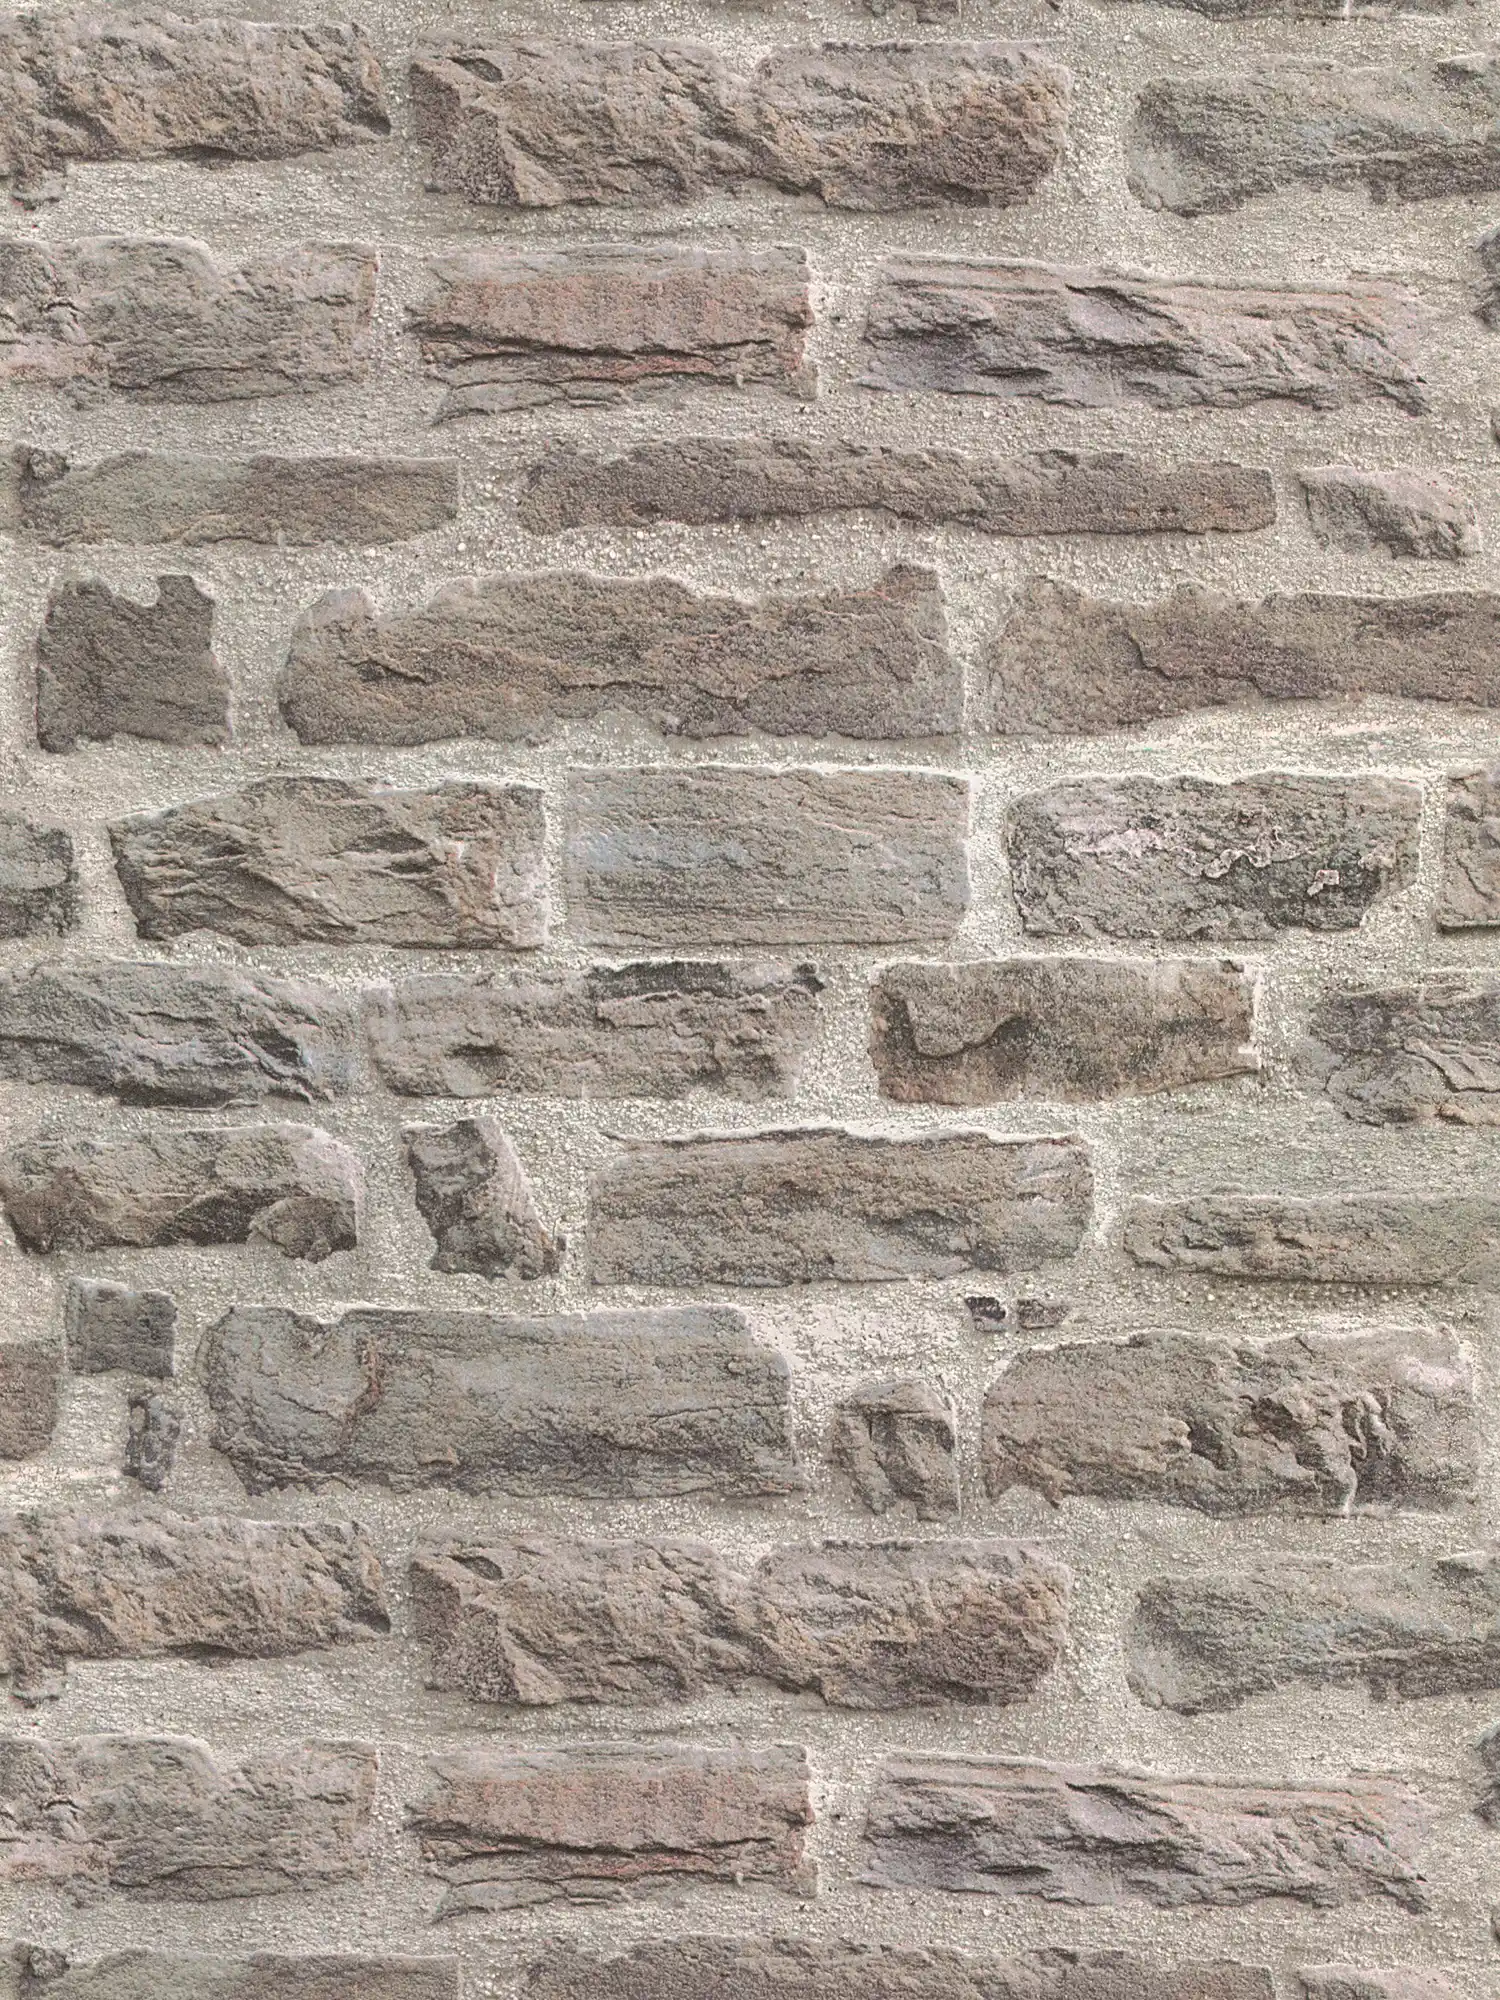 Natuursteenbehang met realistische muurlook - grijs, bruin
